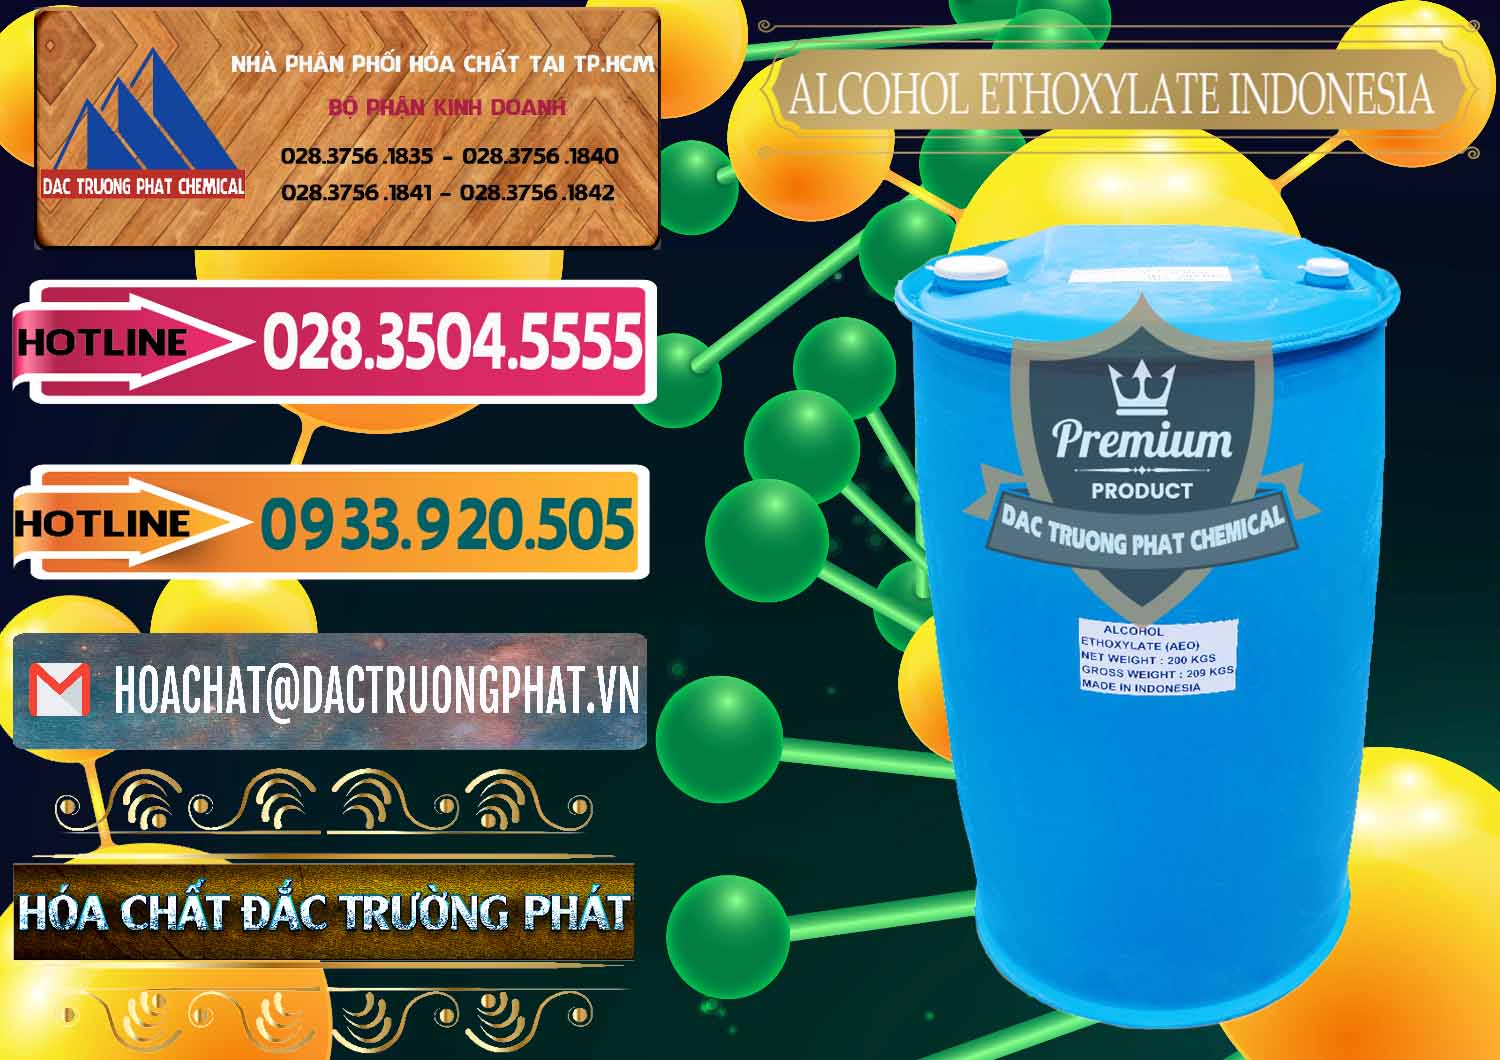 Công ty chuyên cung cấp _ bán Alcohol Ethoxylate Indonesia - 0308 - Công ty chuyên cung ứng - phân phối hóa chất tại TP.HCM - dactruongphat.vn